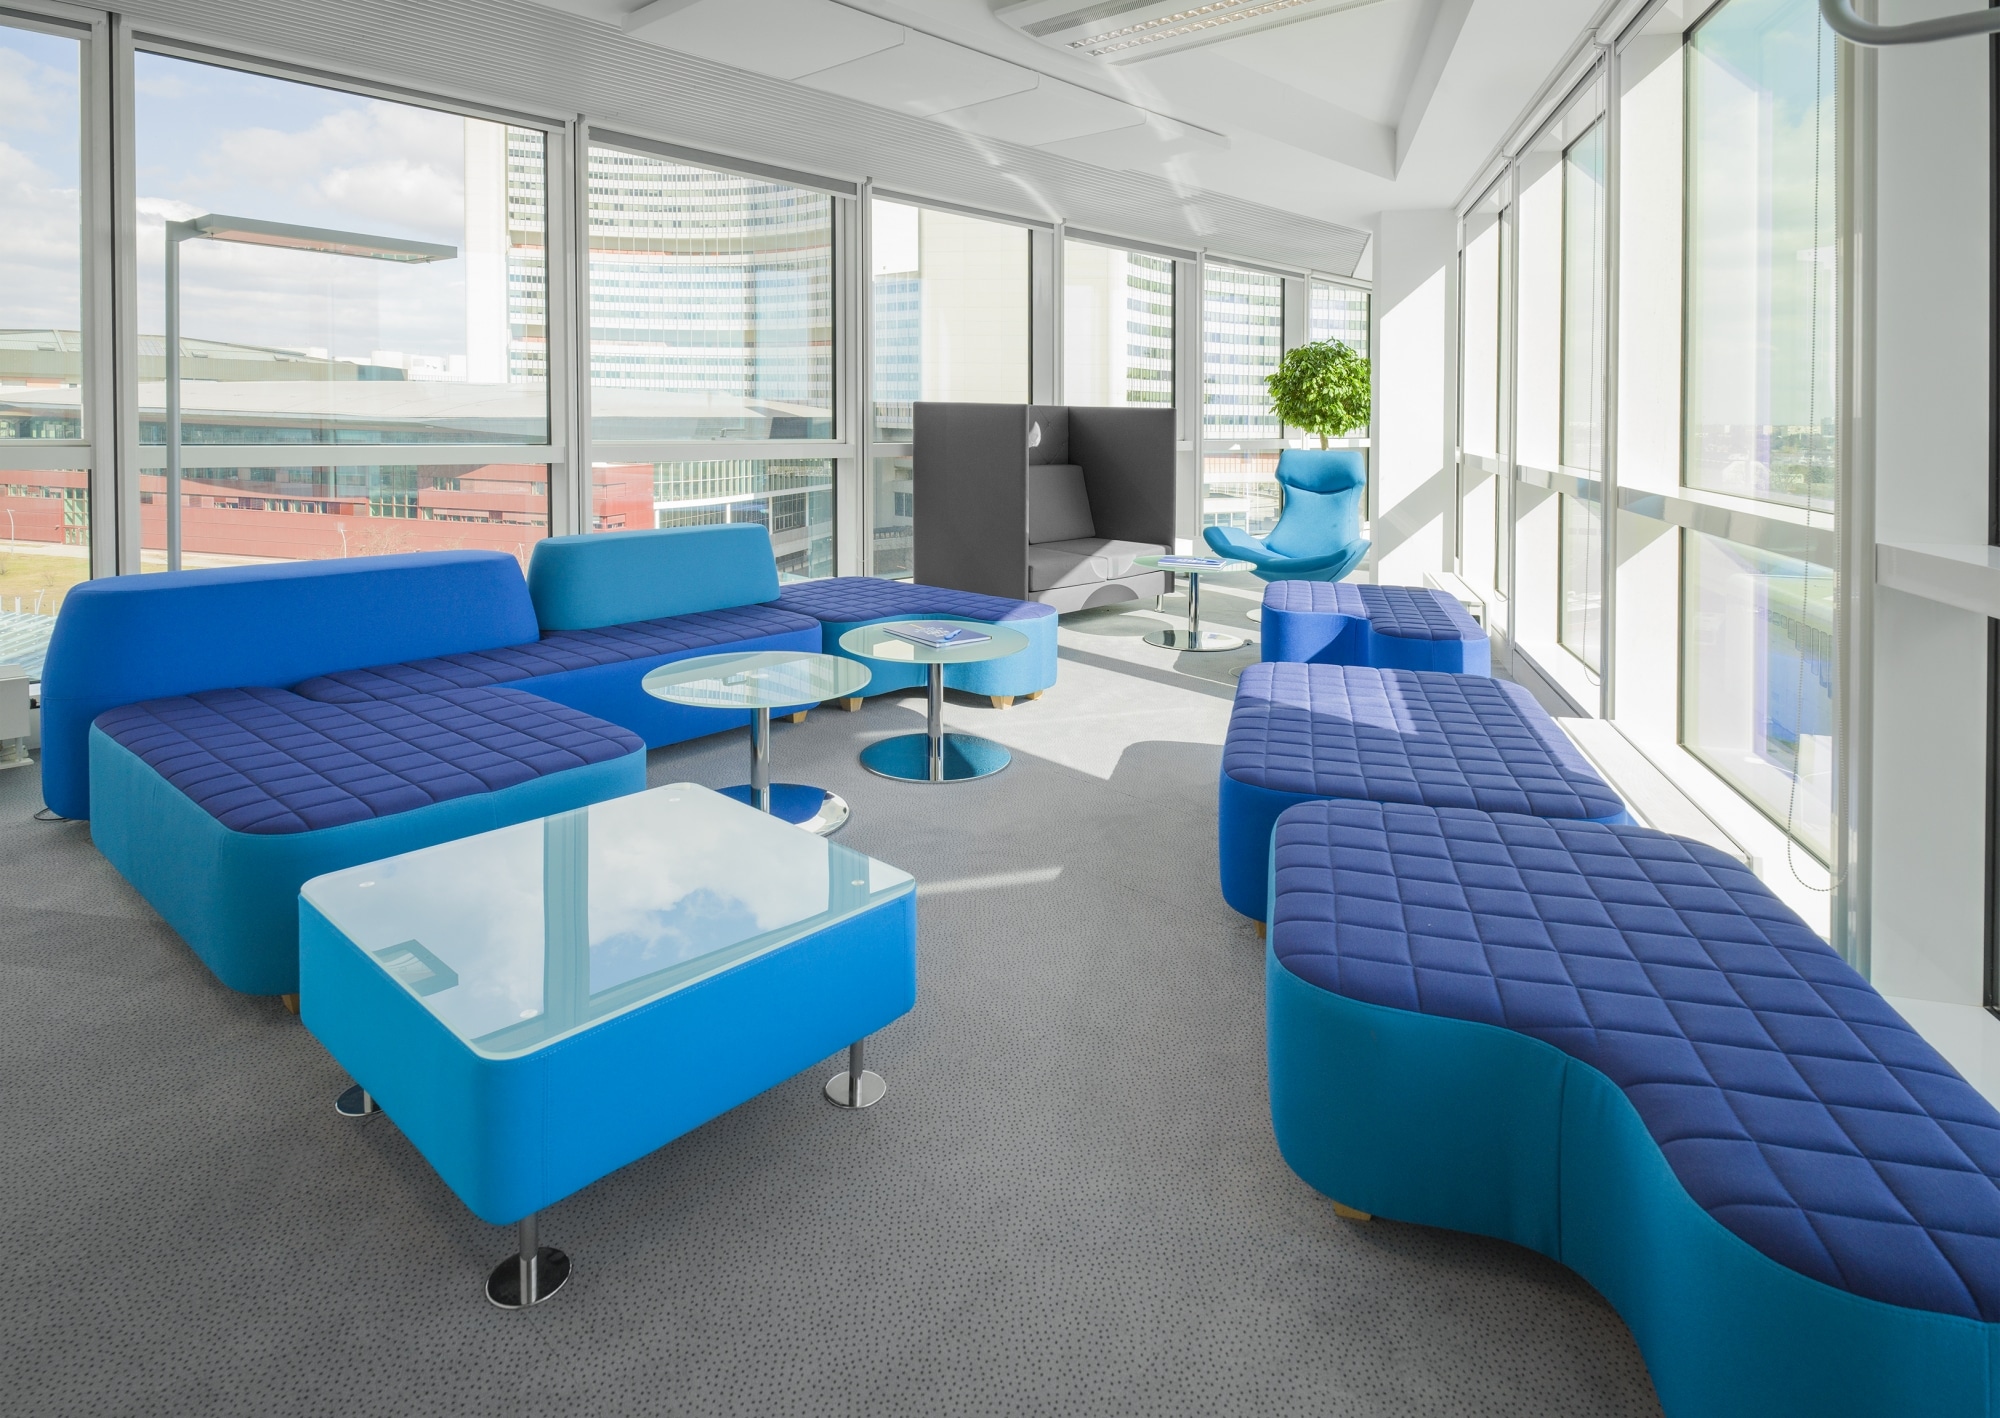 Ambientebild Loungebereich mit bequemen Loungemöbel unterschiedlicher Ausführung in blau.